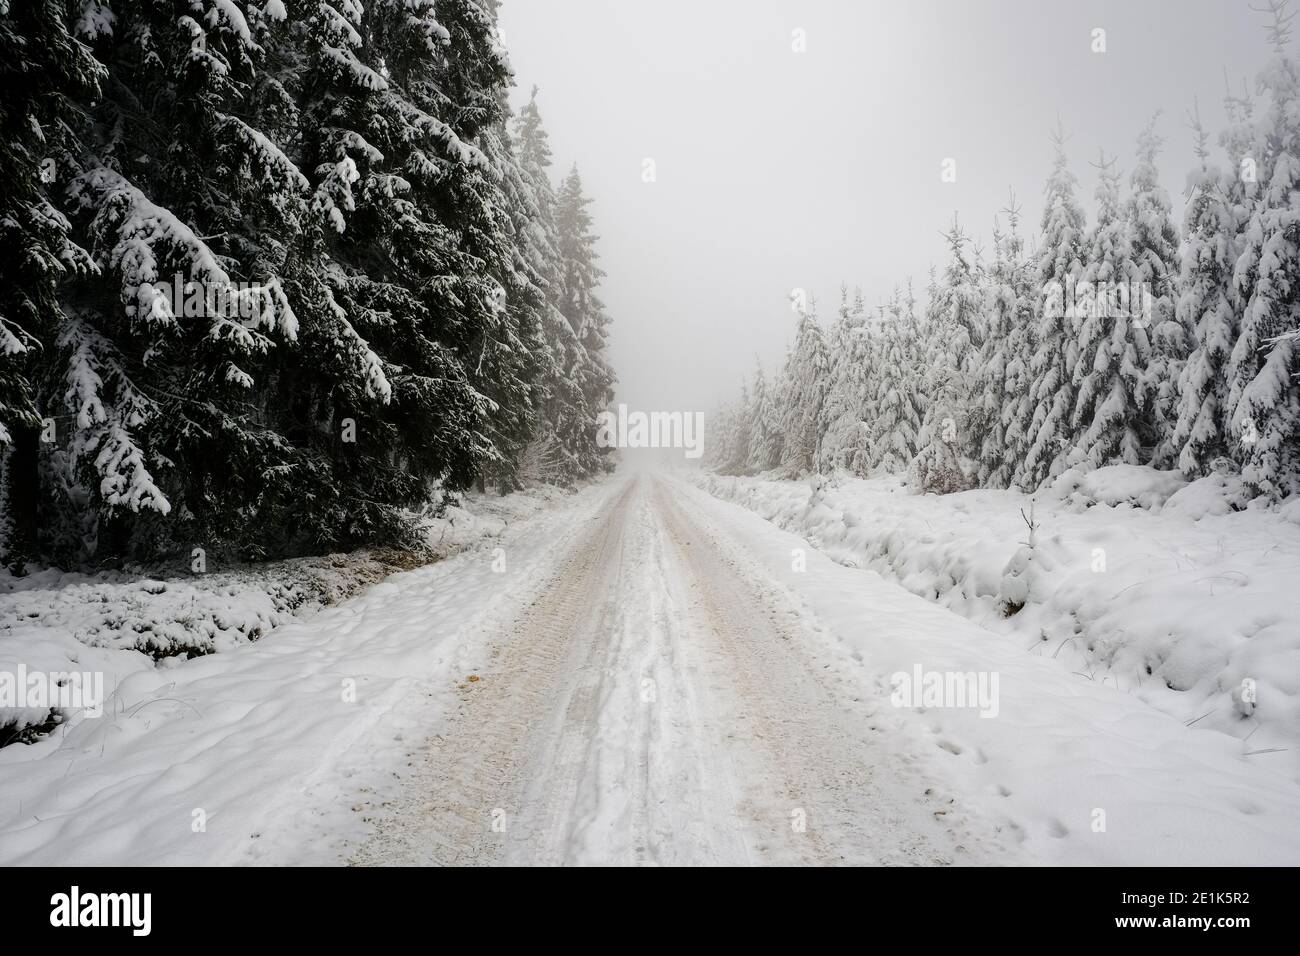 Chemin dans la forêt à travers la neige et le brouillard. Lumière blanche, visibilité limitée. Personne Banque D'Images